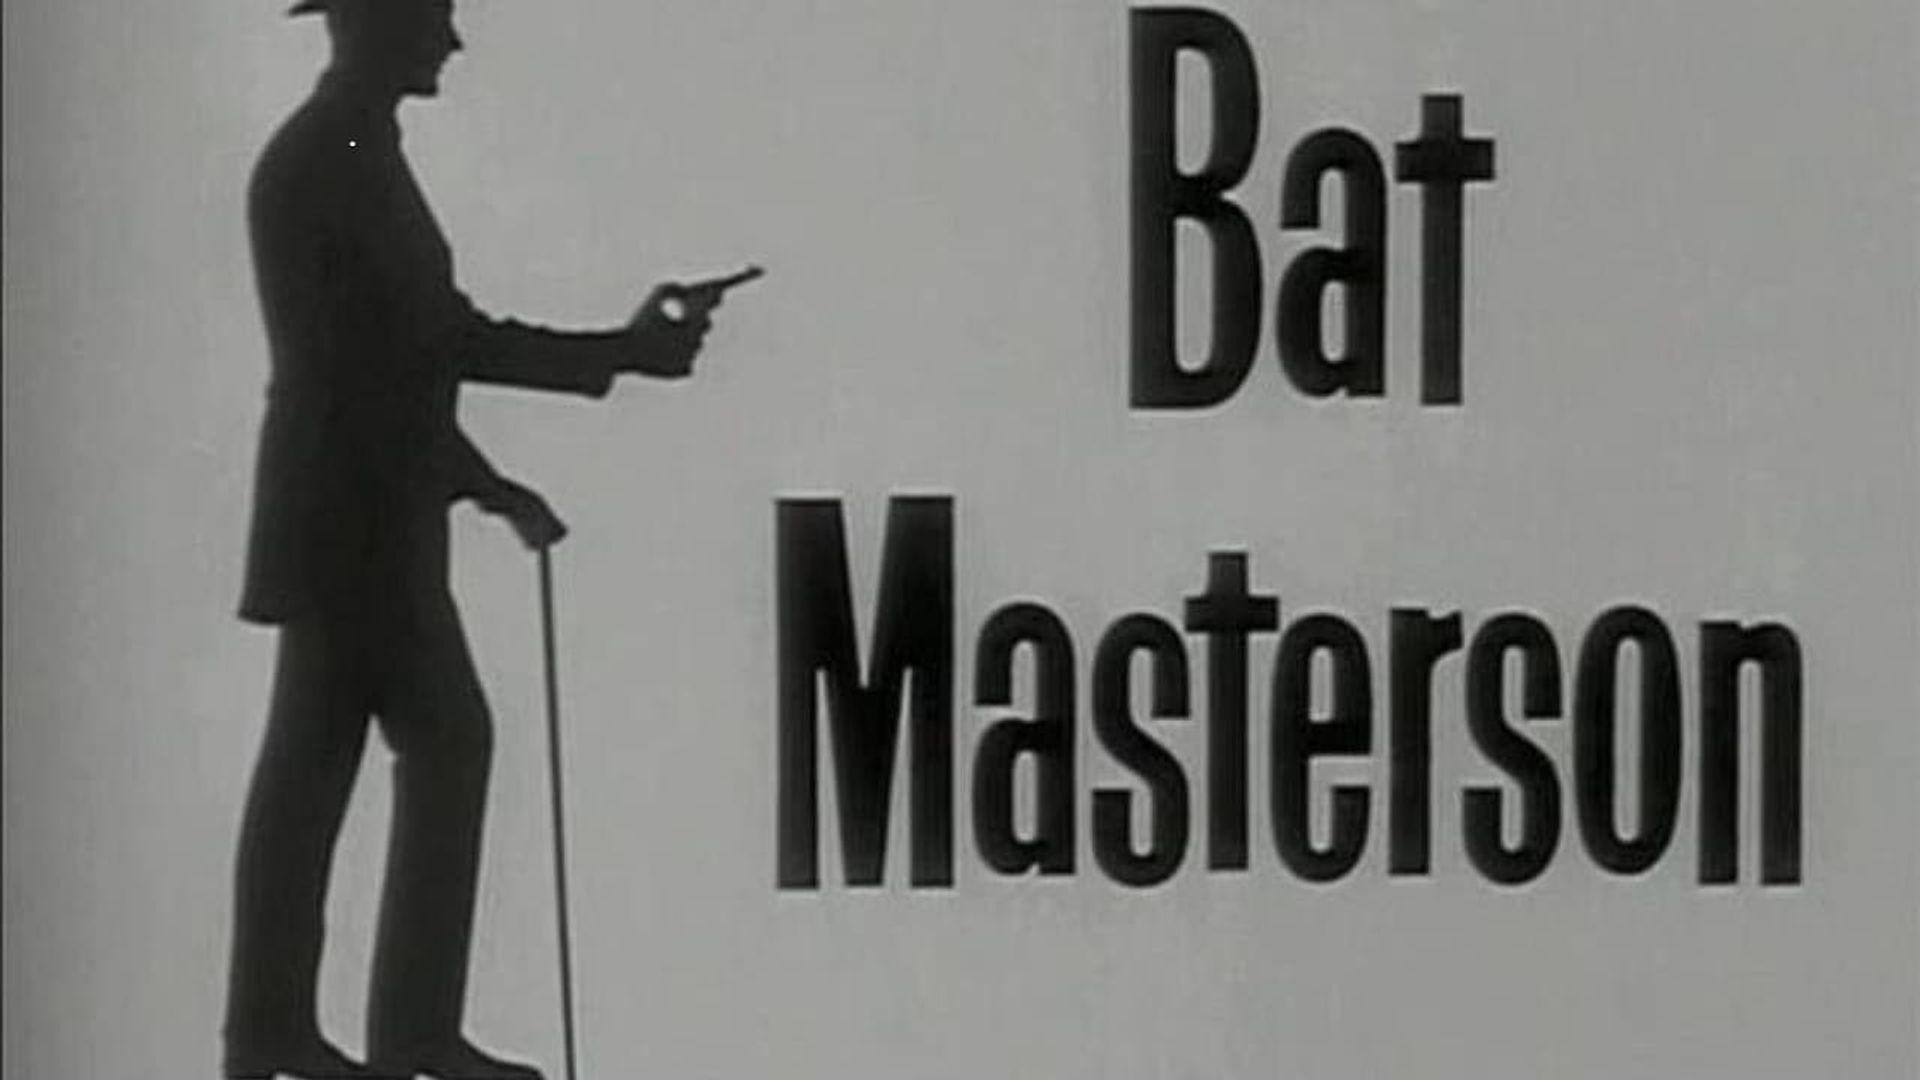 Bat Masterson background